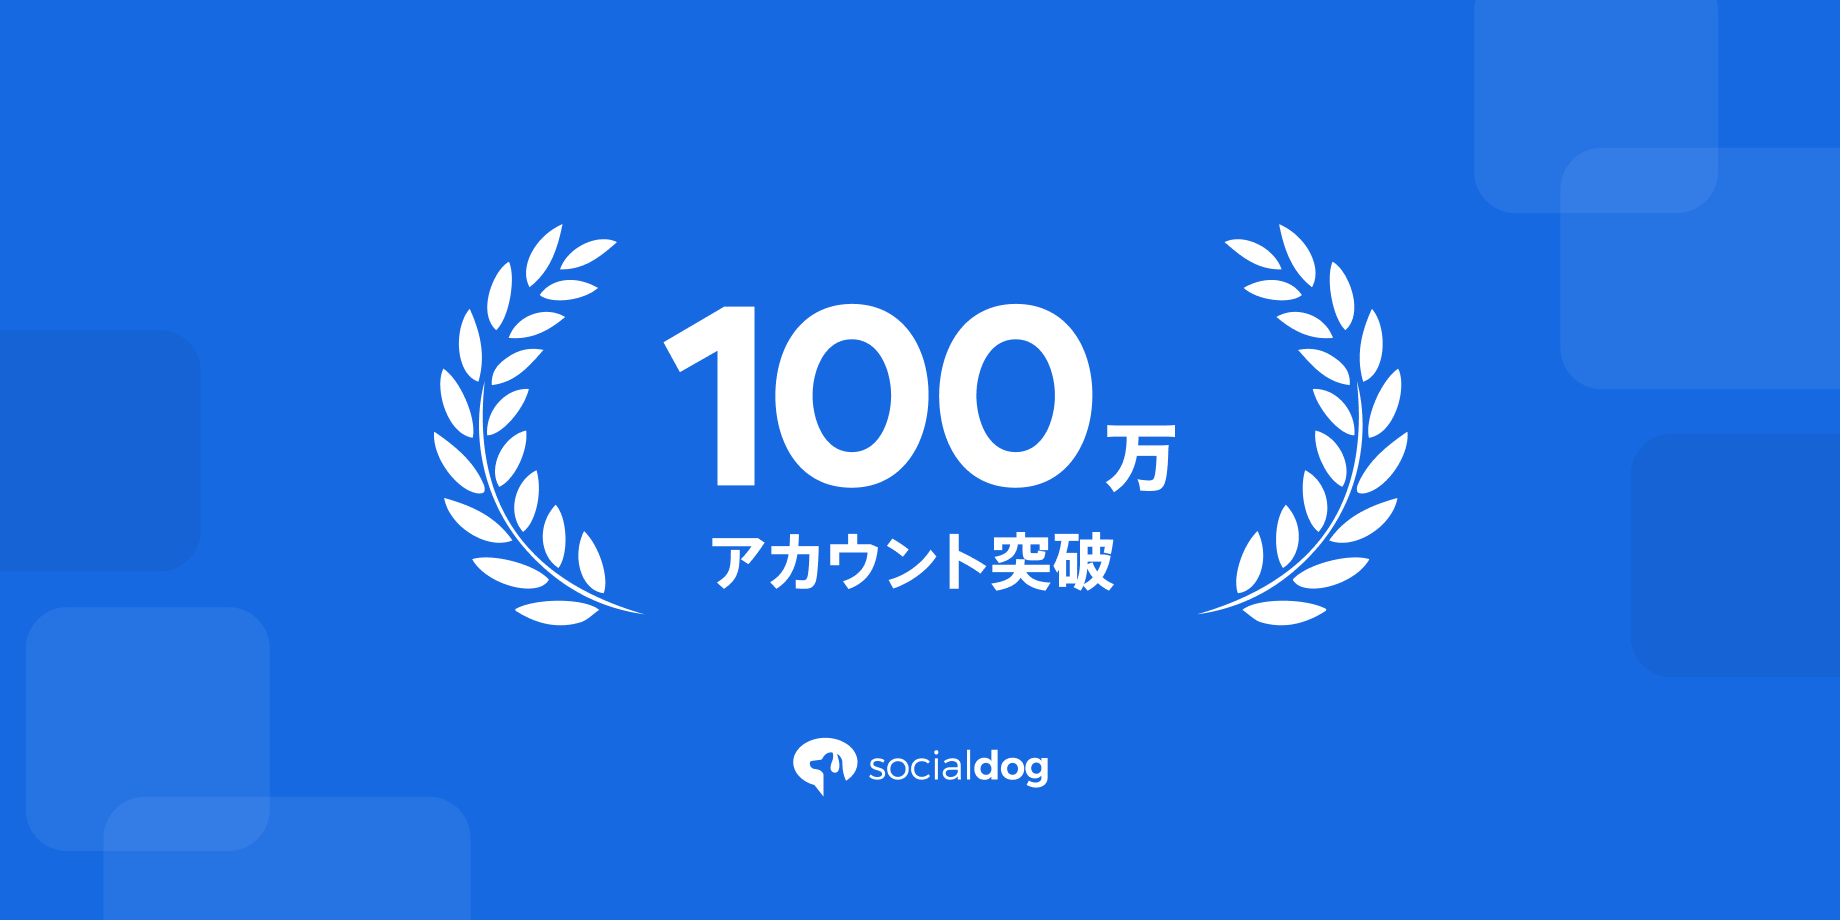 シェアNo.1*の国産SNS管理ツール「SocialDog」のアカウント数が100万を突破しました